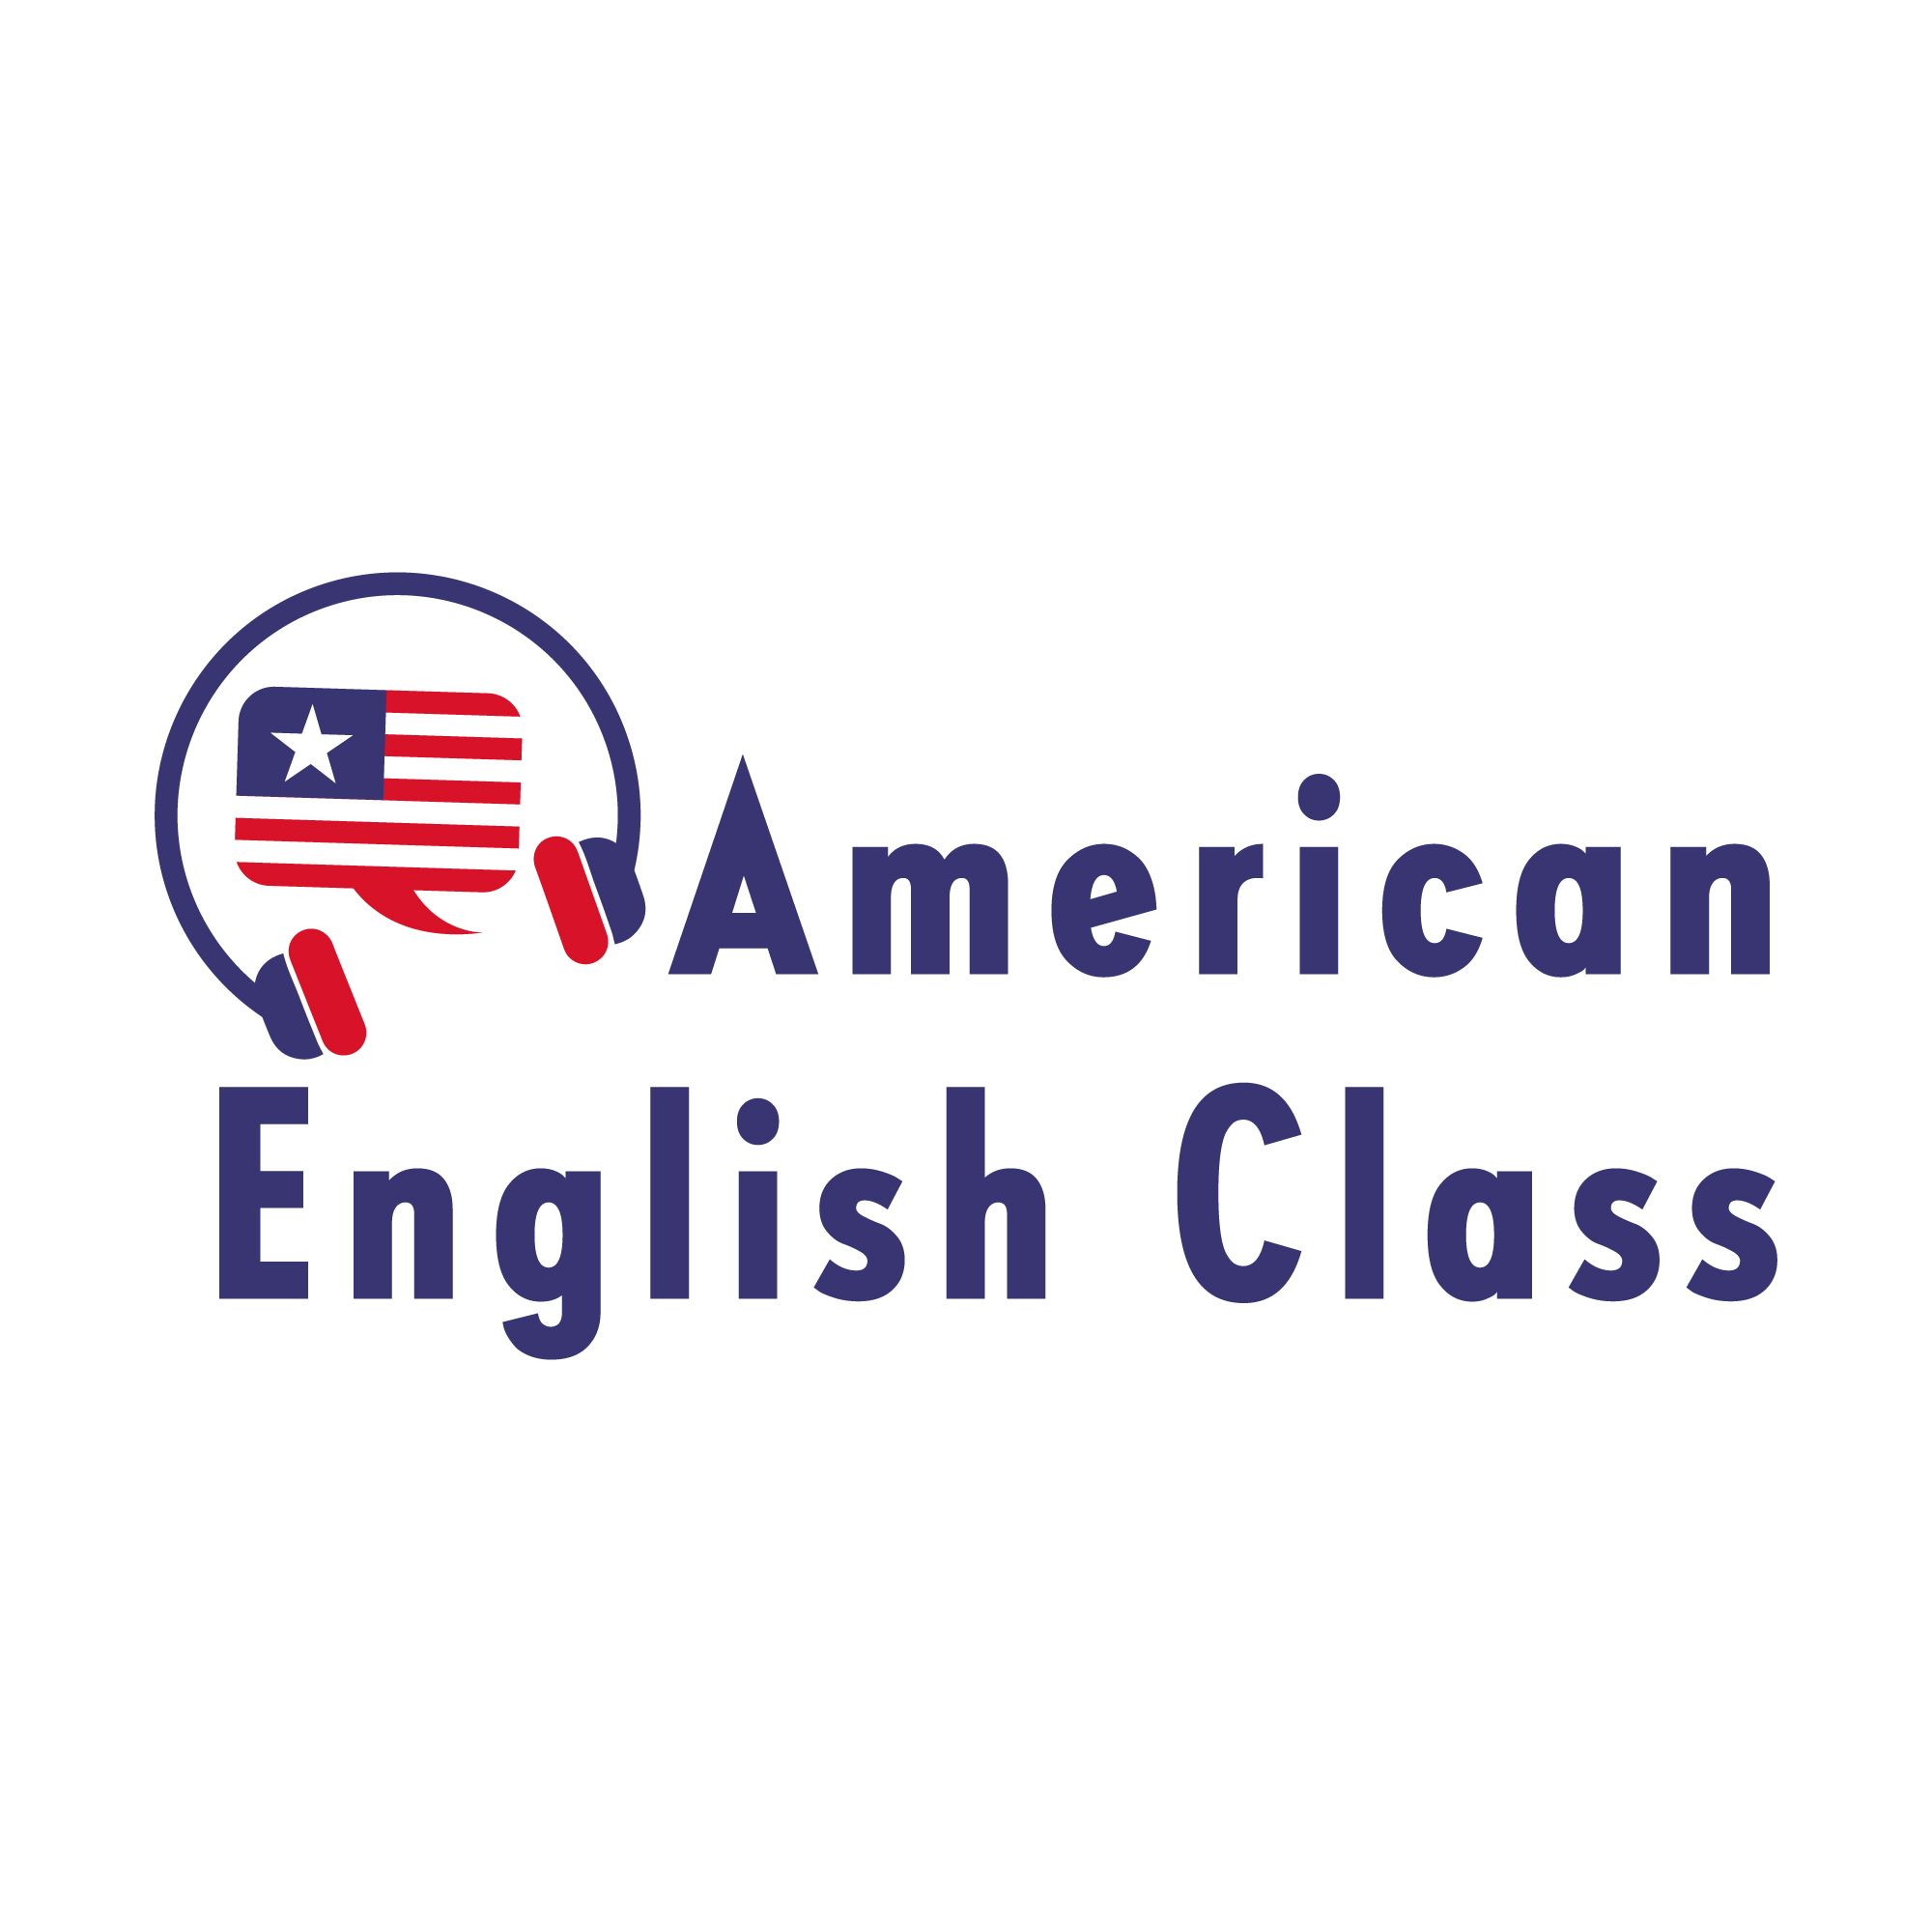 Set of USA English Language Class Logo. Language Exchange Program, Forum,  and International Communication Sign Stock Vector - Illustration of  element, language: 229856967